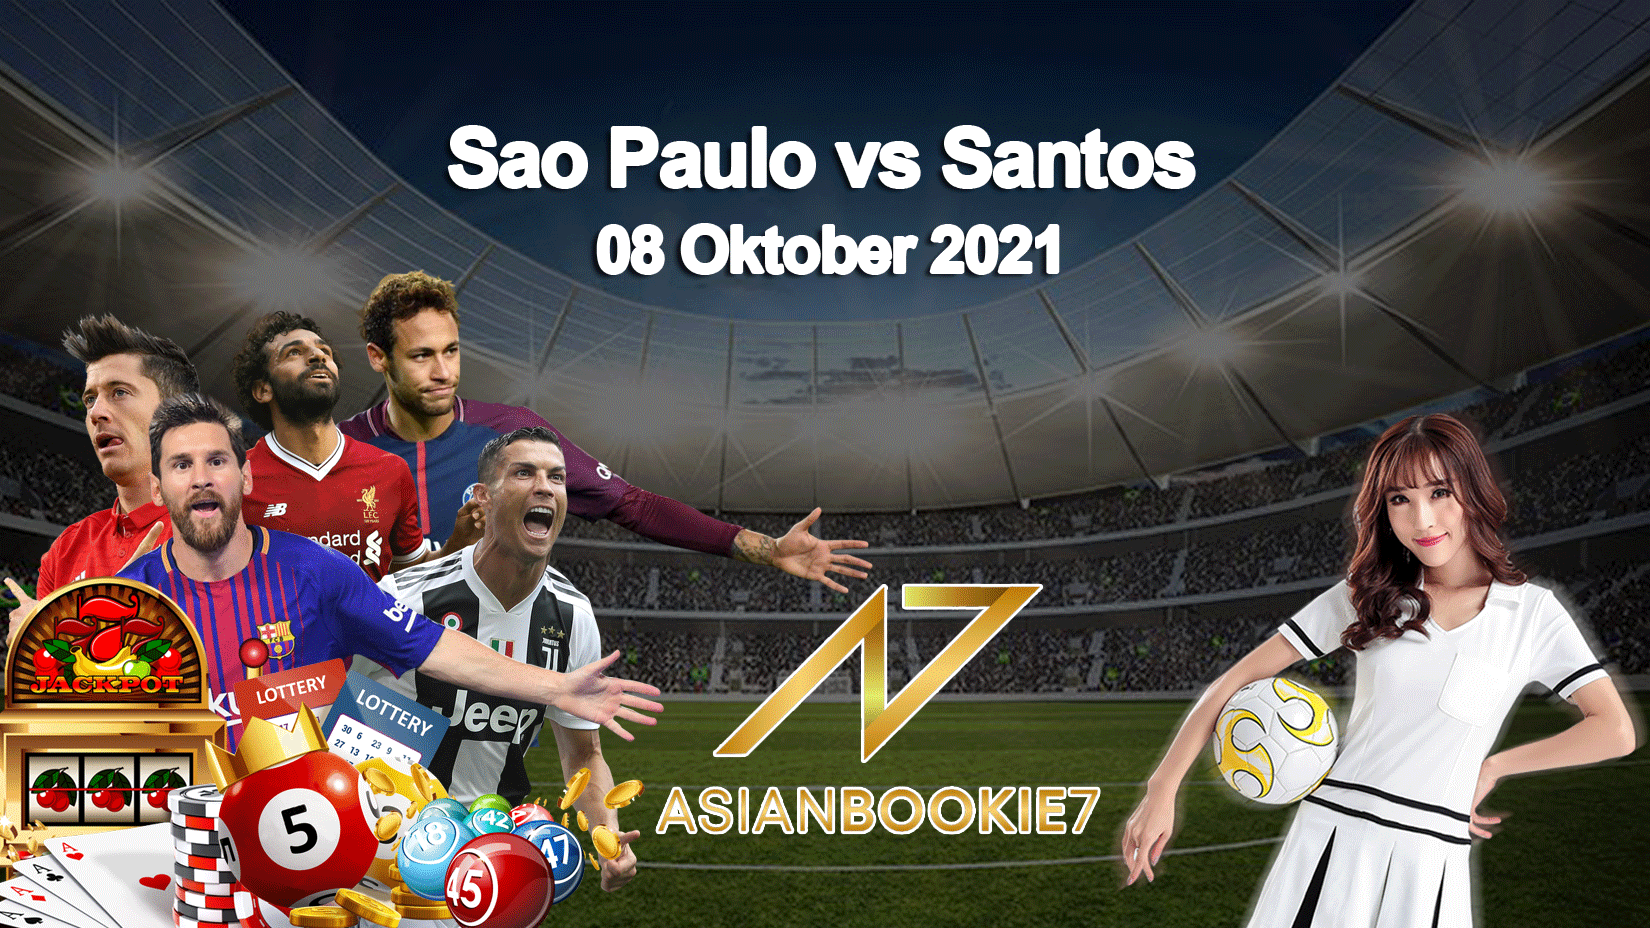 Prediksi Sao Paulo vs Santos 08 Oktober 2021